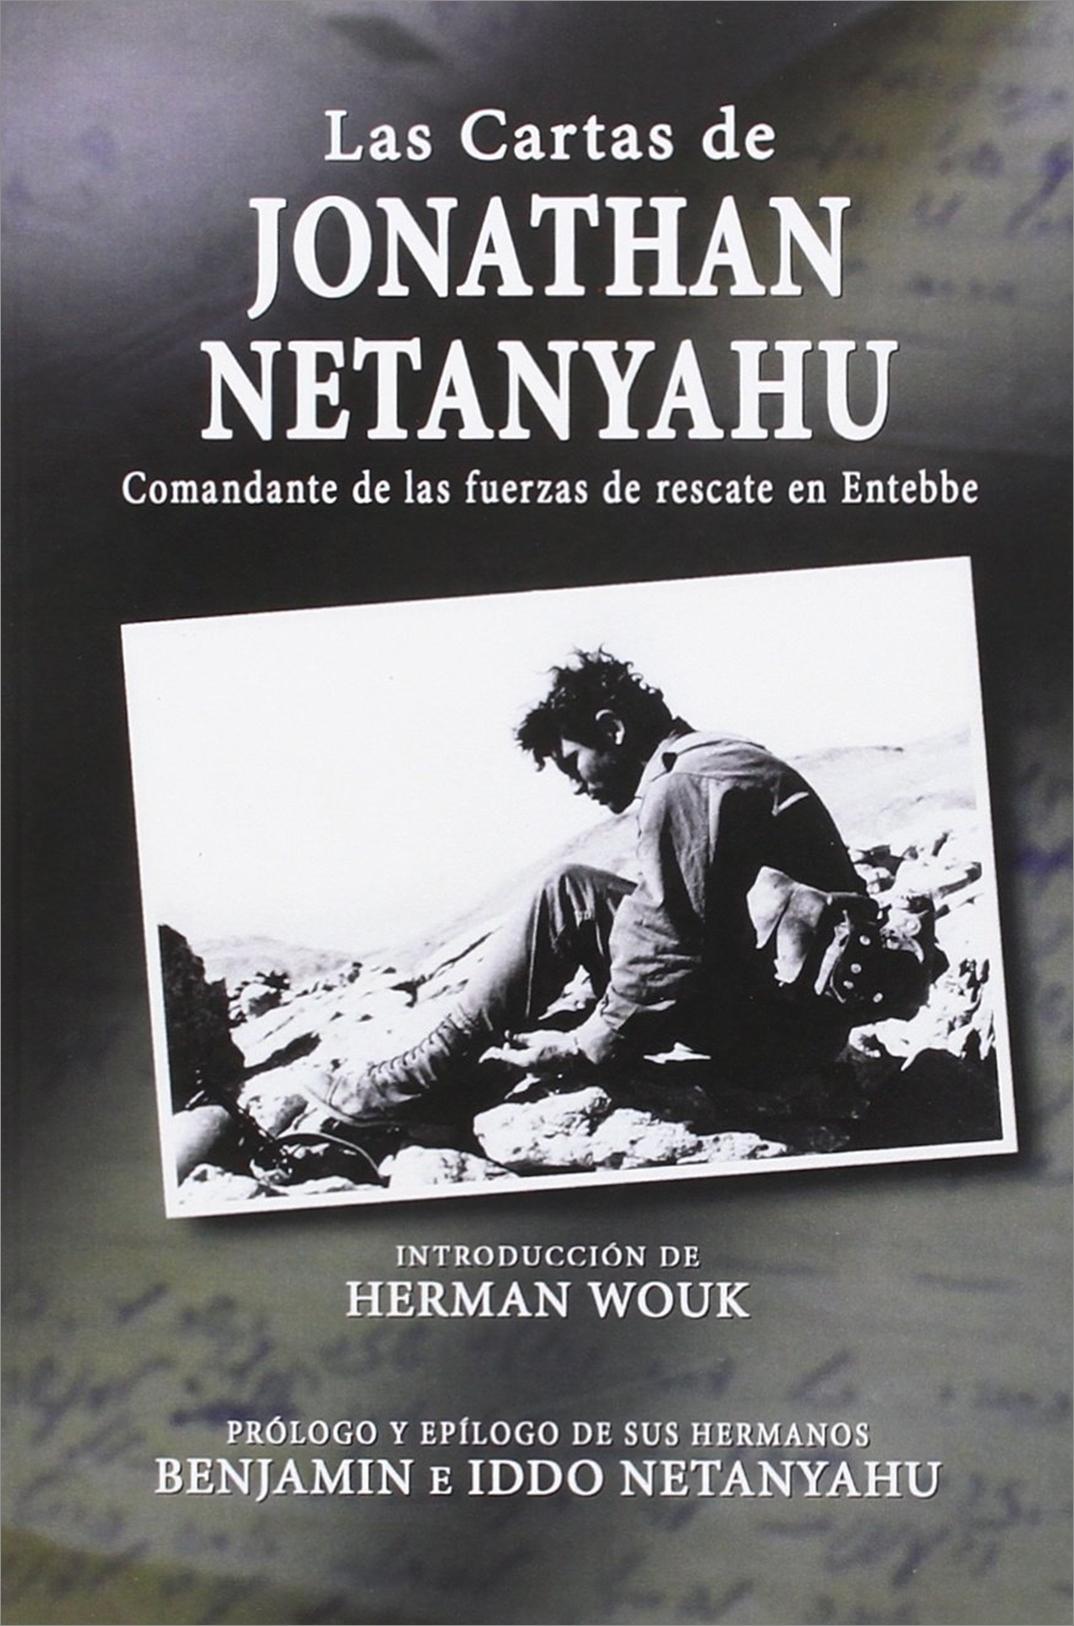 Las cartas de Jonathan Netanyahu  "Comandante de las fuerzas de rescate en Entebbe"